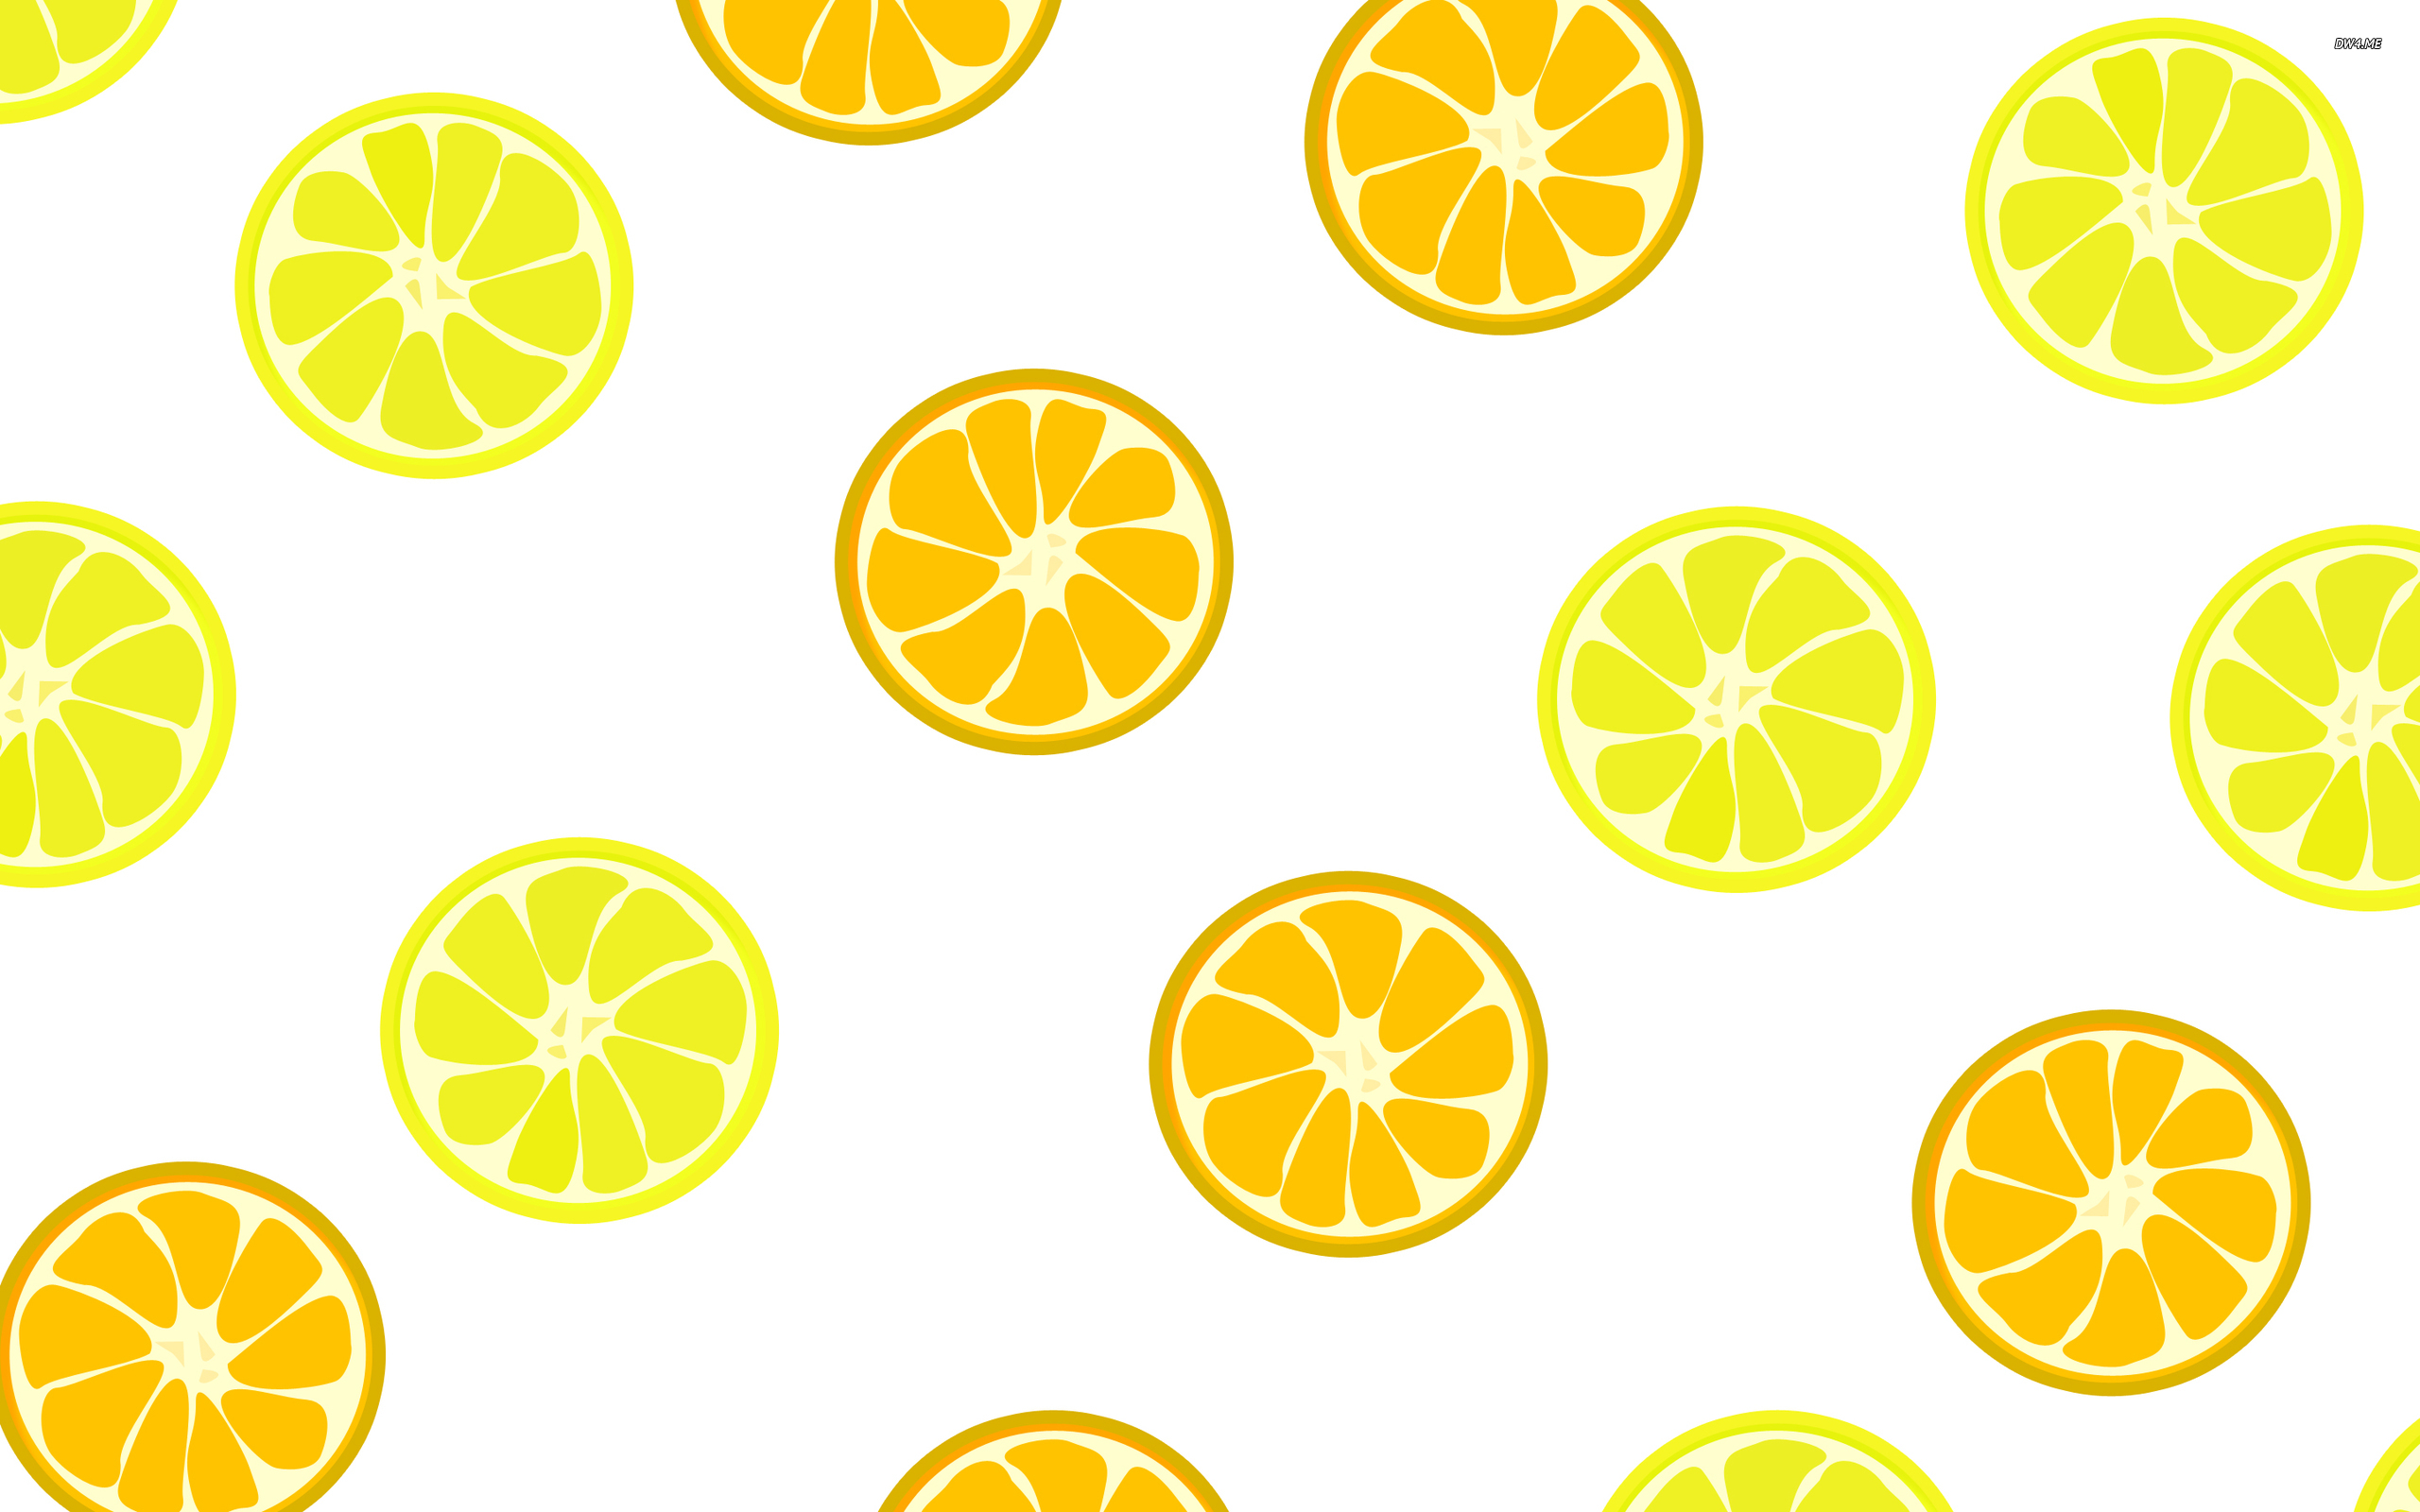 Share more than 169 lemon wallpaper hd latest - xkldase.edu.vn